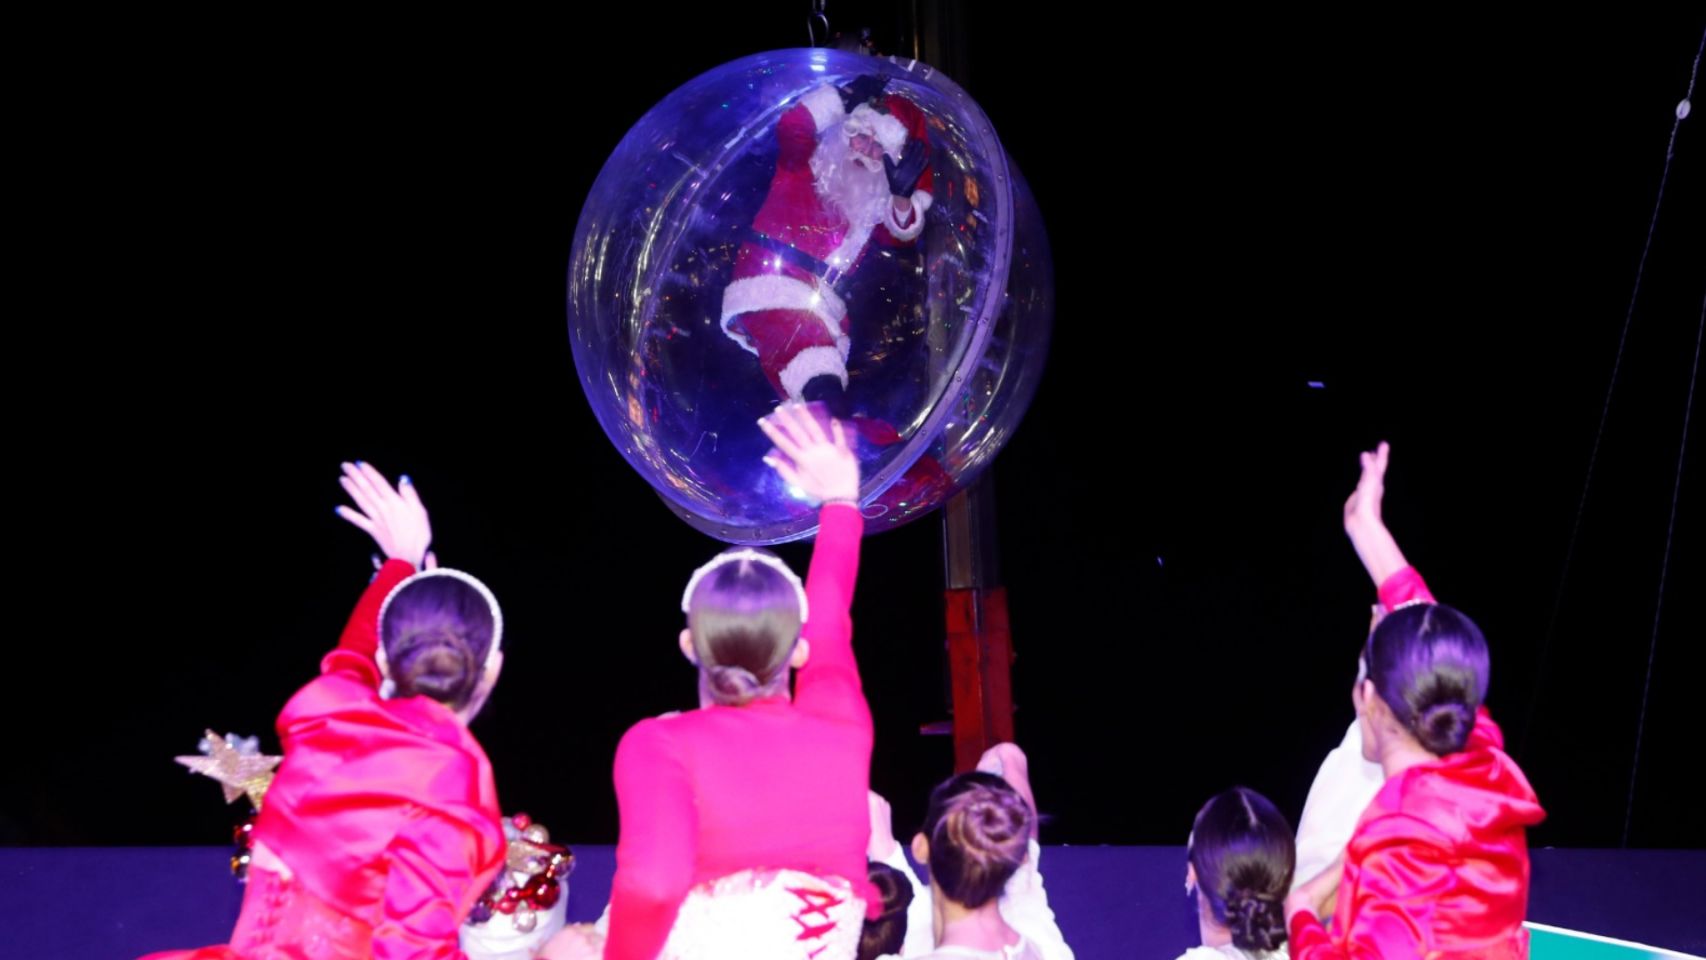 Llegada de Papá Noel en una burbuja gigante.